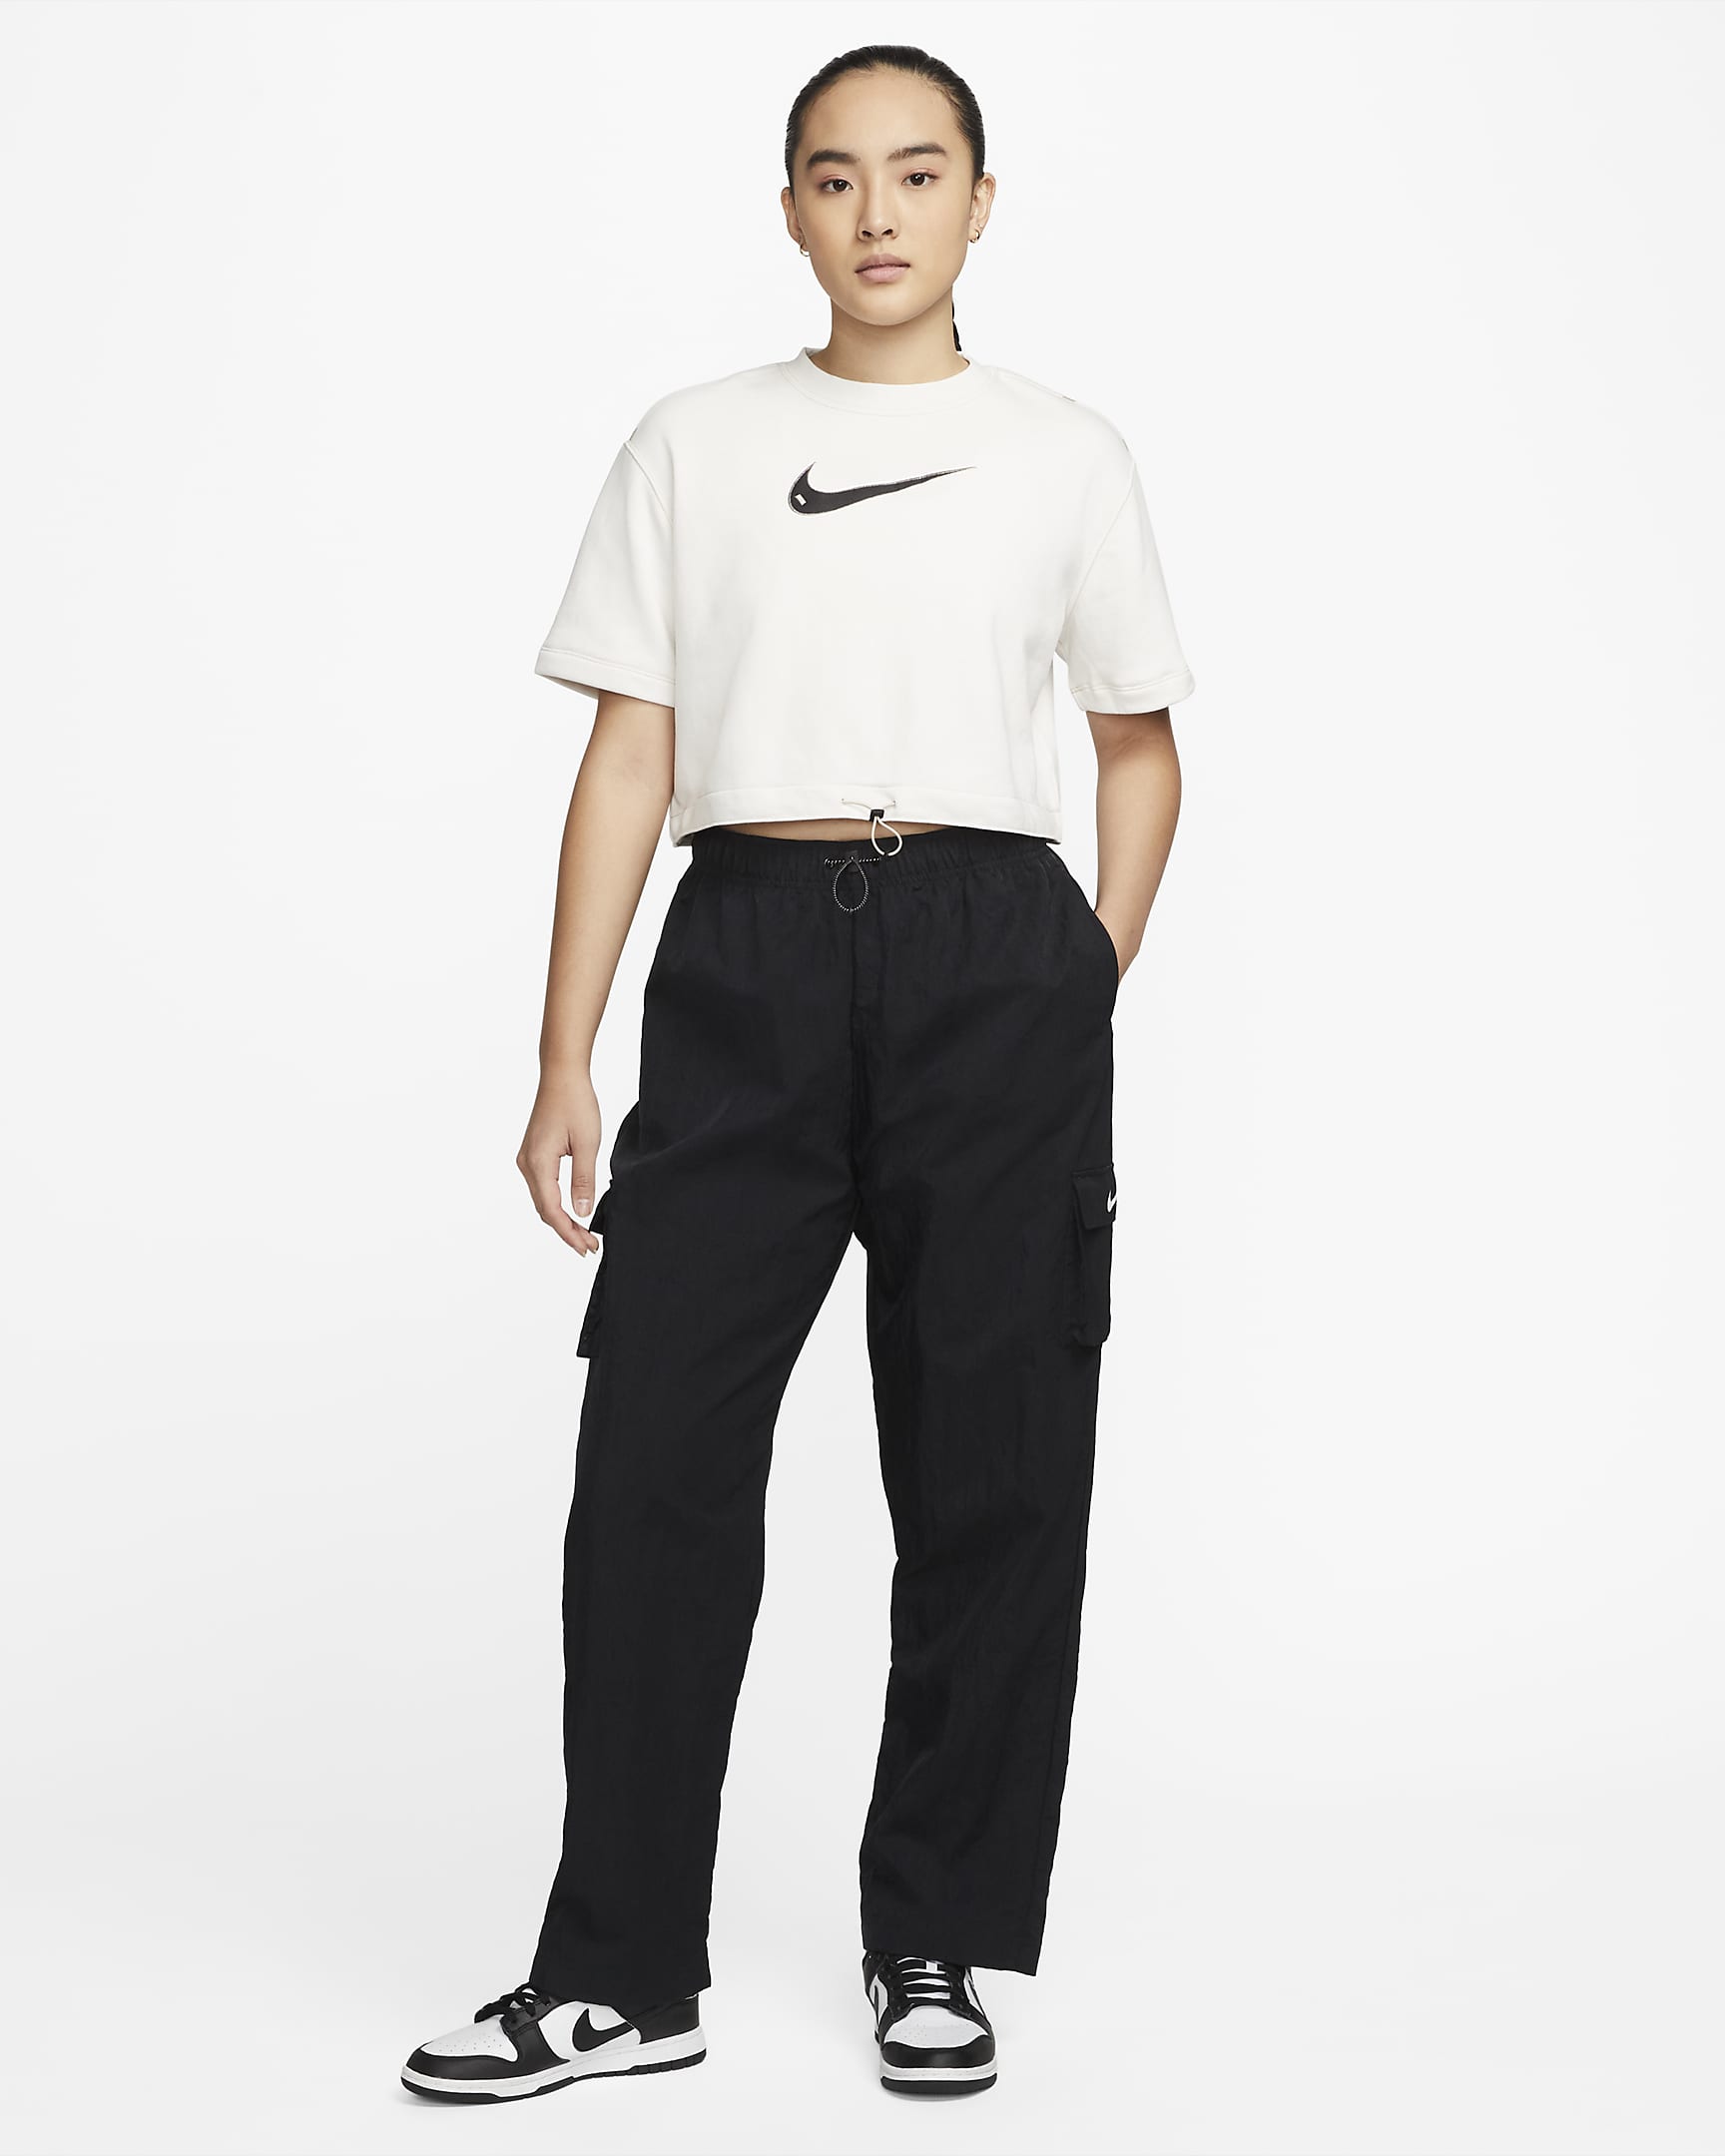 Nike Sportswear Swoosh Women's Short-Sleeve Crop Top. Nike IN